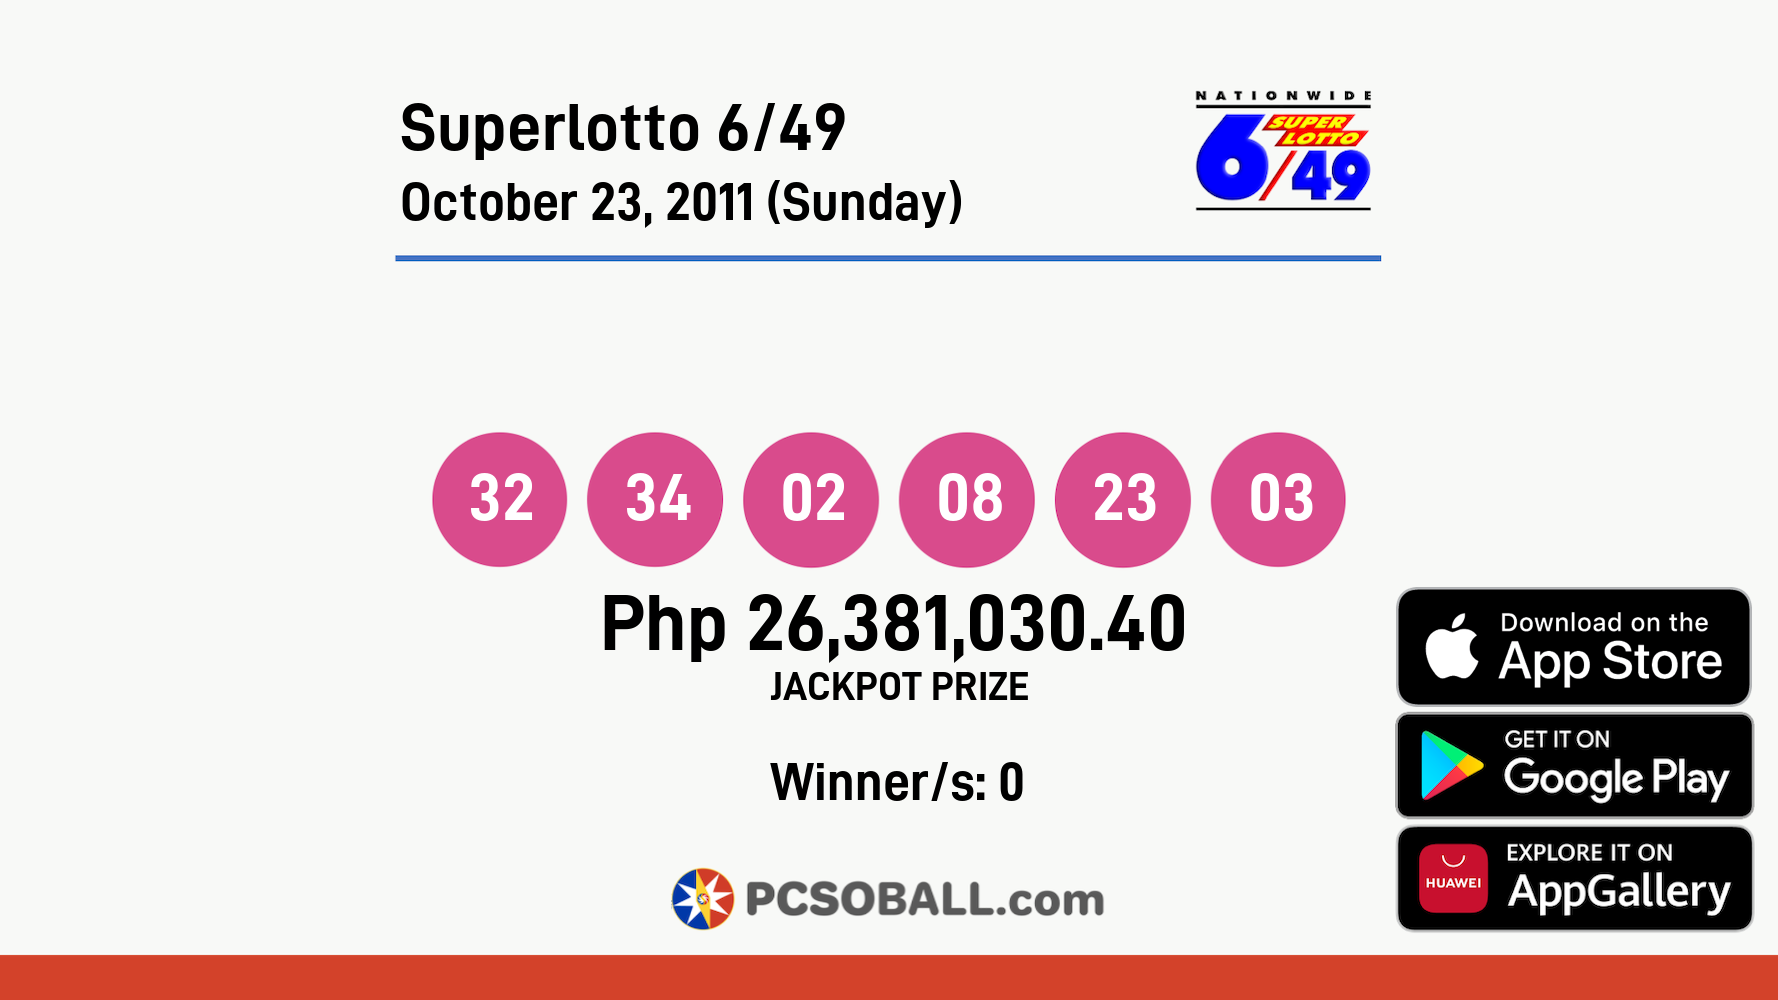 Superlotto 6/49 October 23, 2011 (Sunday) Result